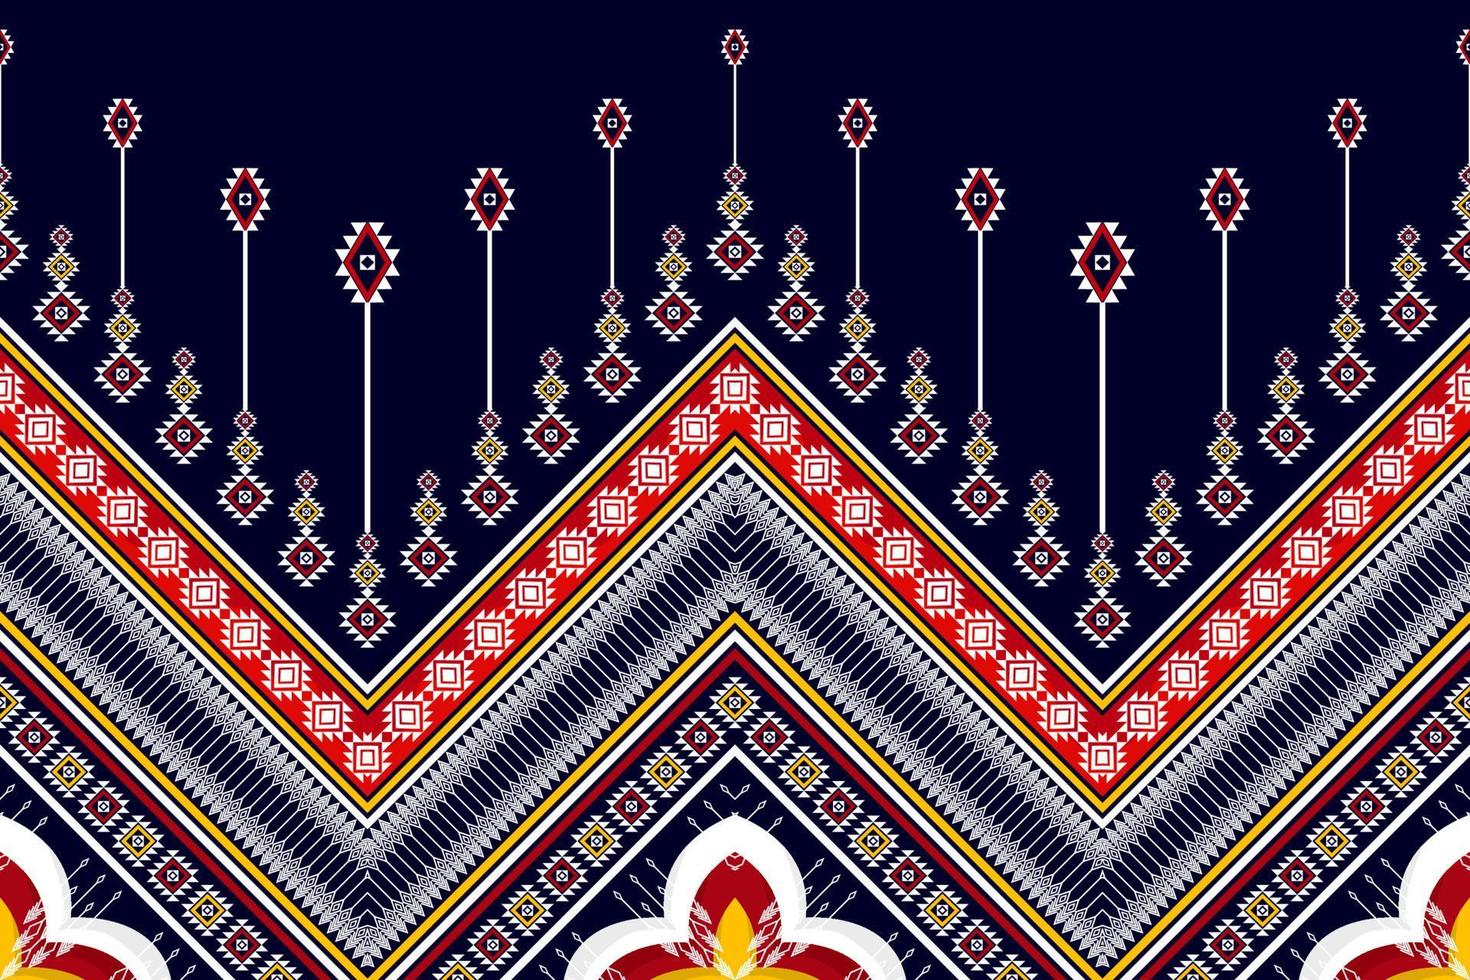 design de padrão étnico geométrico abstrato. tecido asteca tapete mandala ornamento boho nativo chevron têxtil decoração wallpaper. fundo de vetor de bordado tradicional étnico tribal